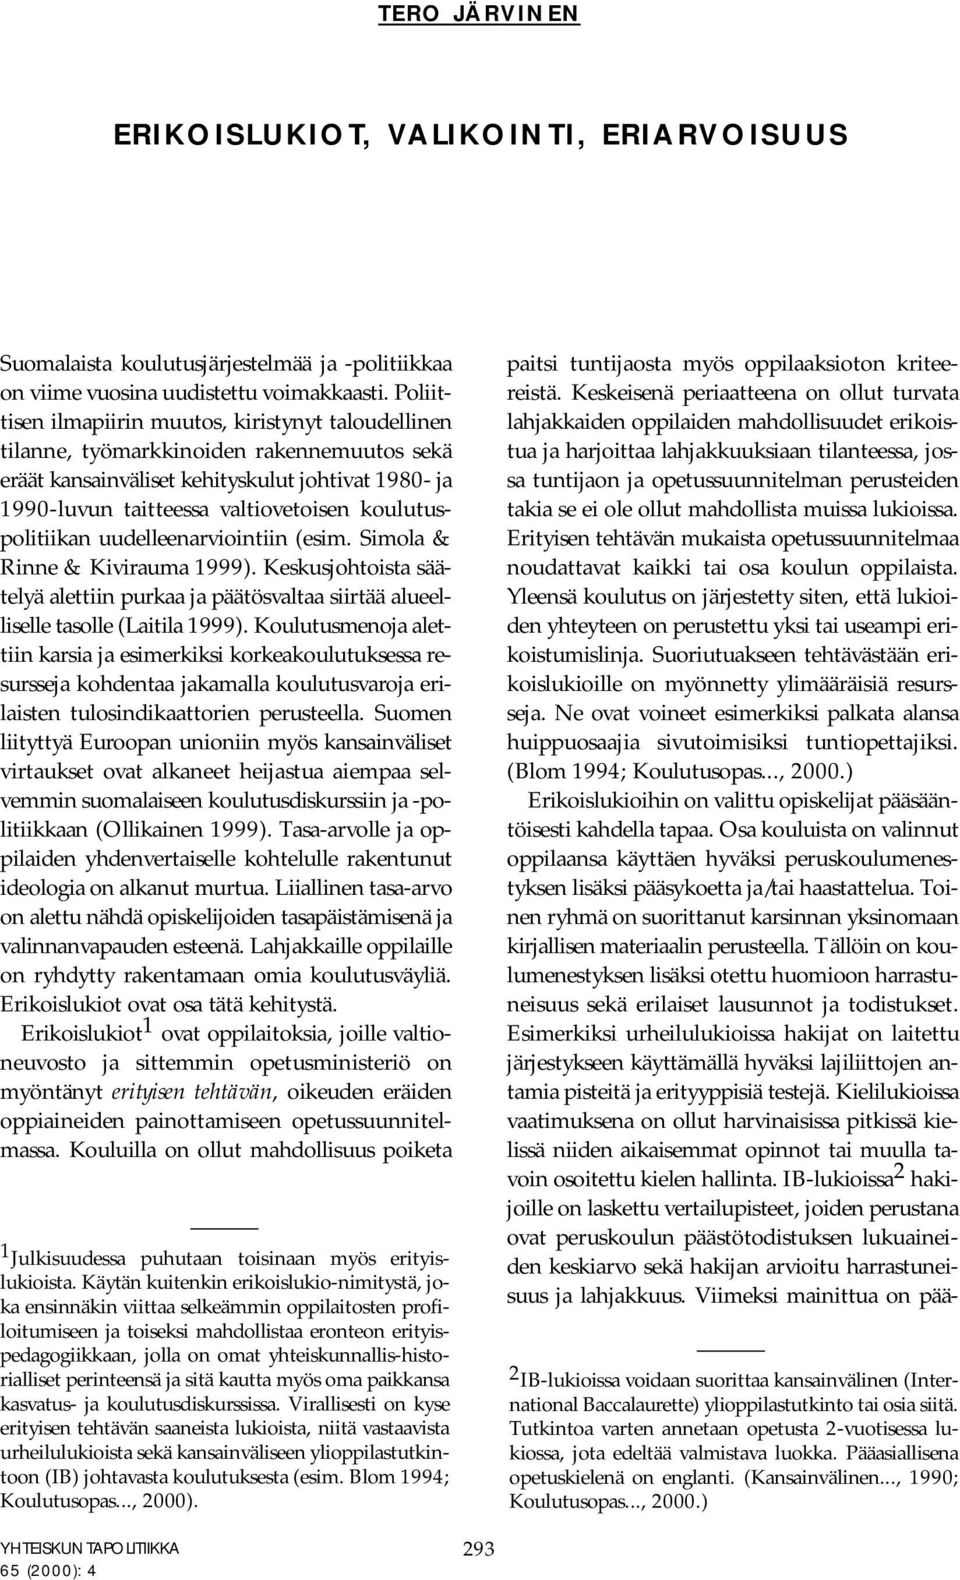 koulutuspolitiikan uudelleenarviointiin (esim. Simola & Rinne & Kivirauma 1999). Keskusjohtoista säätelyä alettiin purkaa ja päätösvaltaa siirtää alueelliselle tasolle (Laitila 1999).